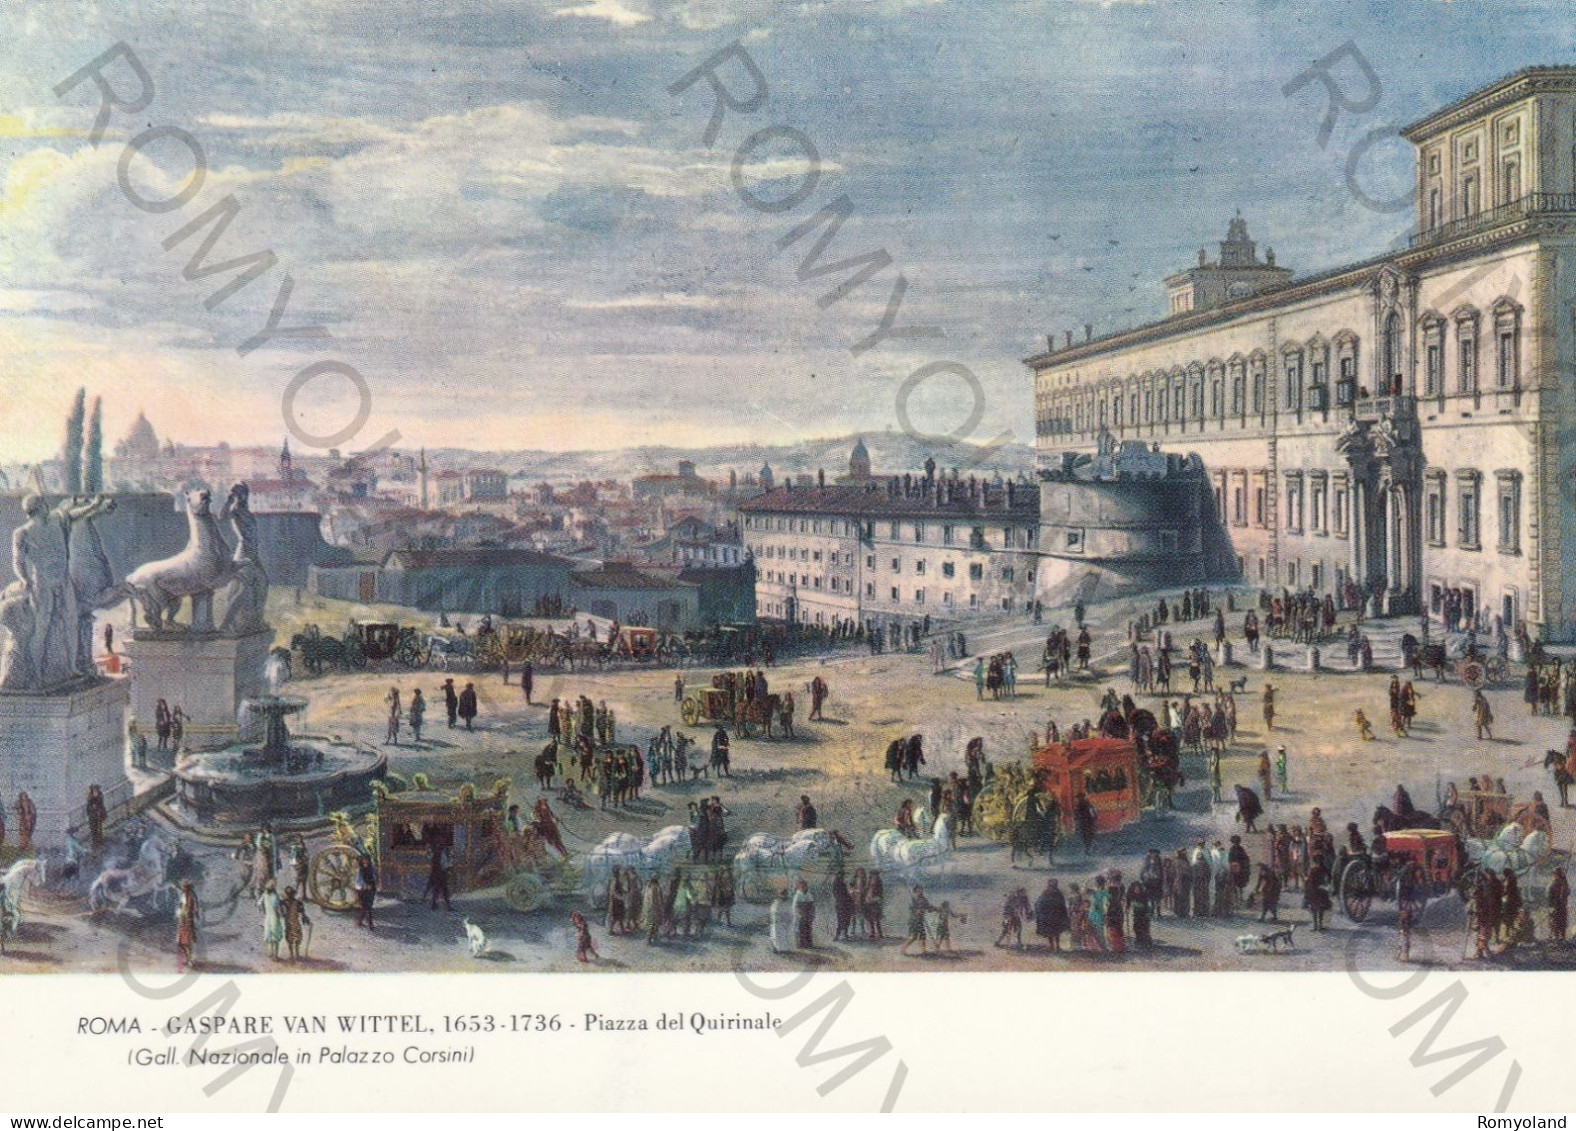 CARTOLINA  ROMA,LAZIO-GALL.NAZIONALE IN PALAZZO CORSINI-GASPARE VAN WITTEL 1653-1736 PIAZZA DEL QUIRINALE-NON VIAGGIATA - Expositions